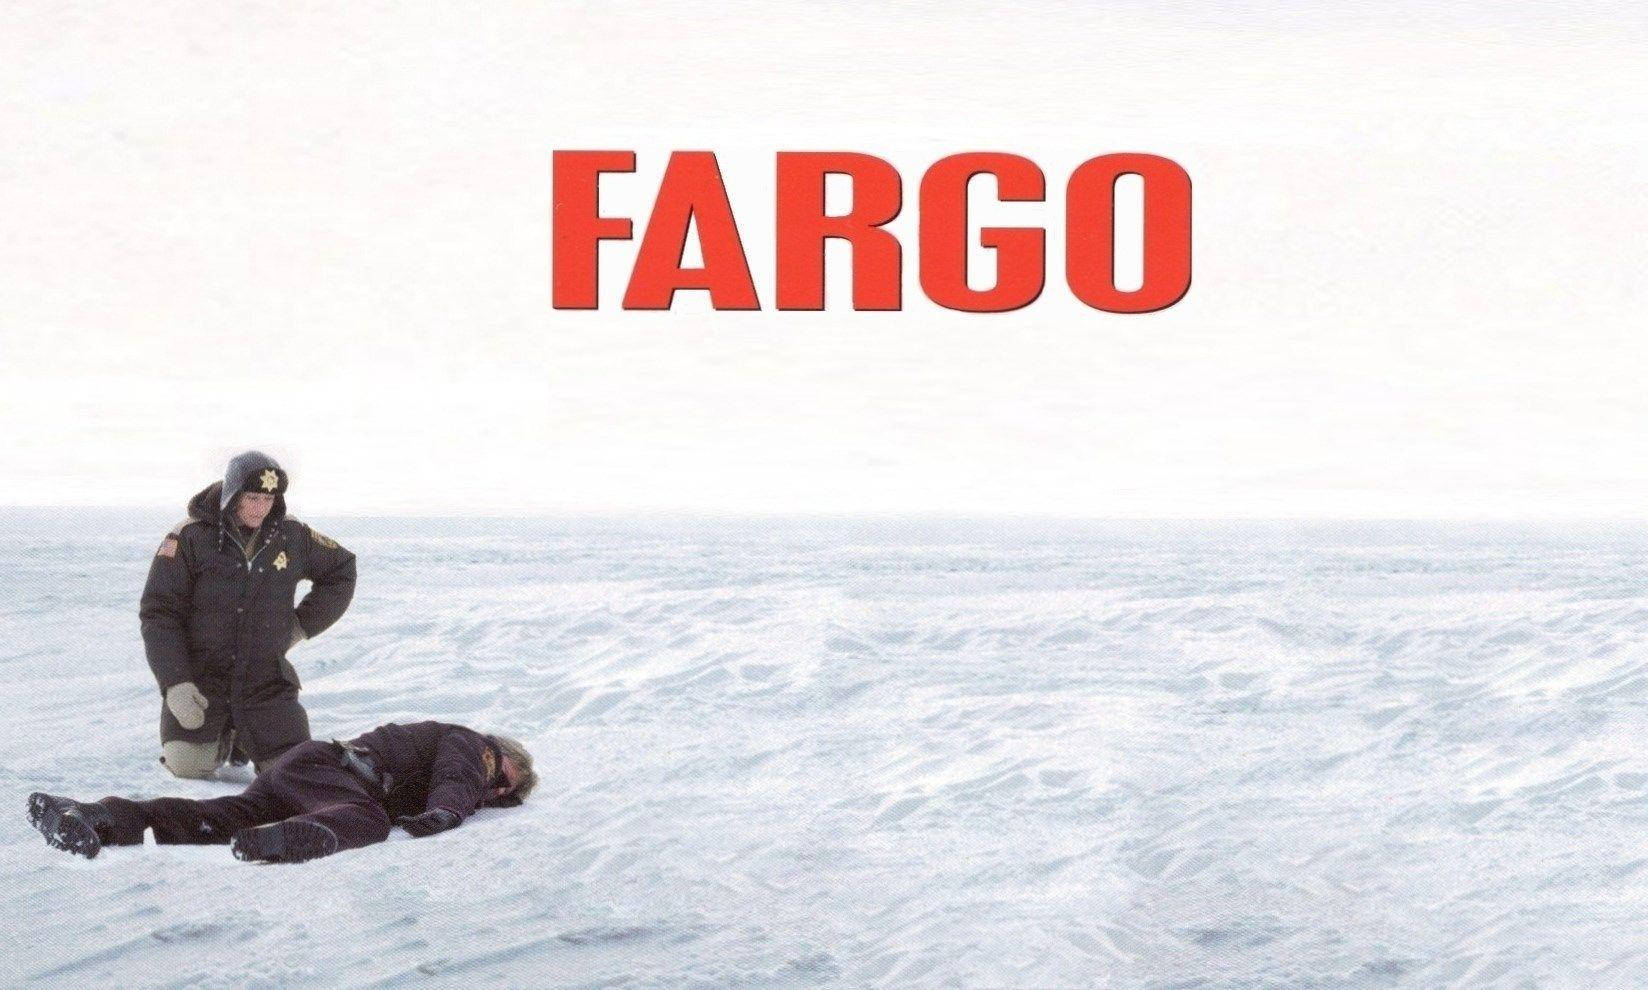 Fondode Pantalla De Fargo, Con Fondo Blanco. Fondo de pantalla